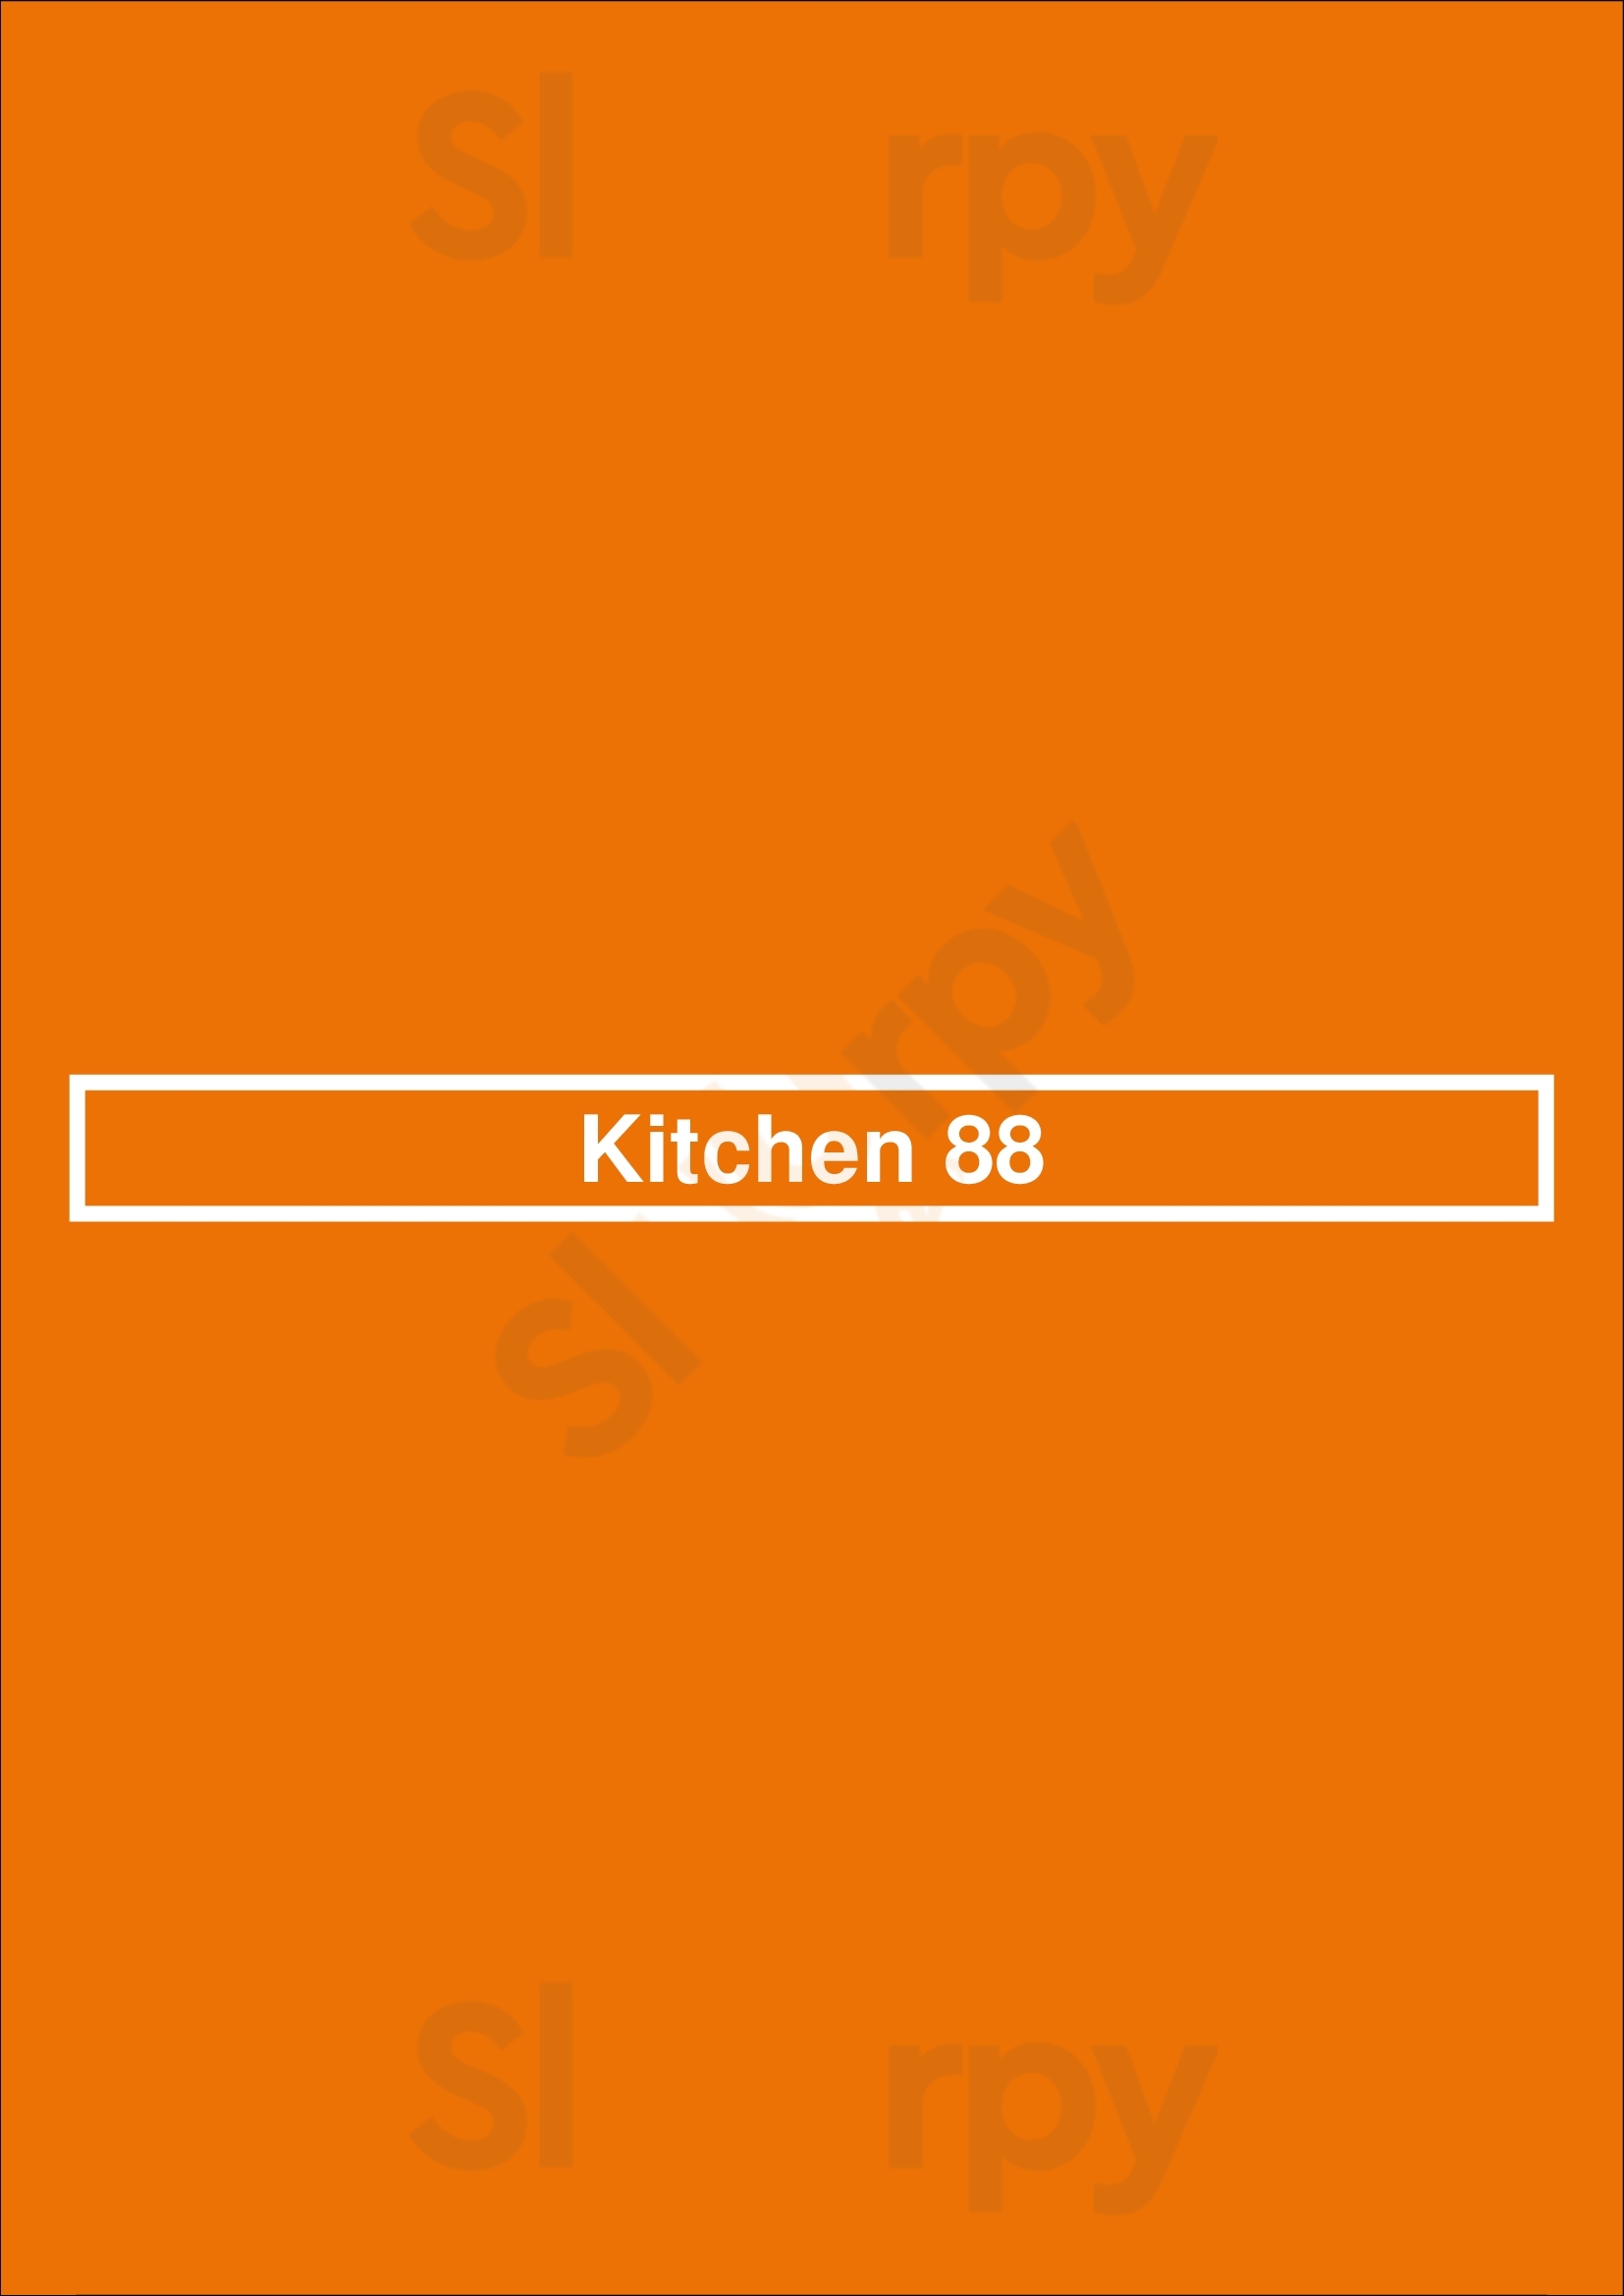 Kitchen 88 Leamington Spa Menu - 1